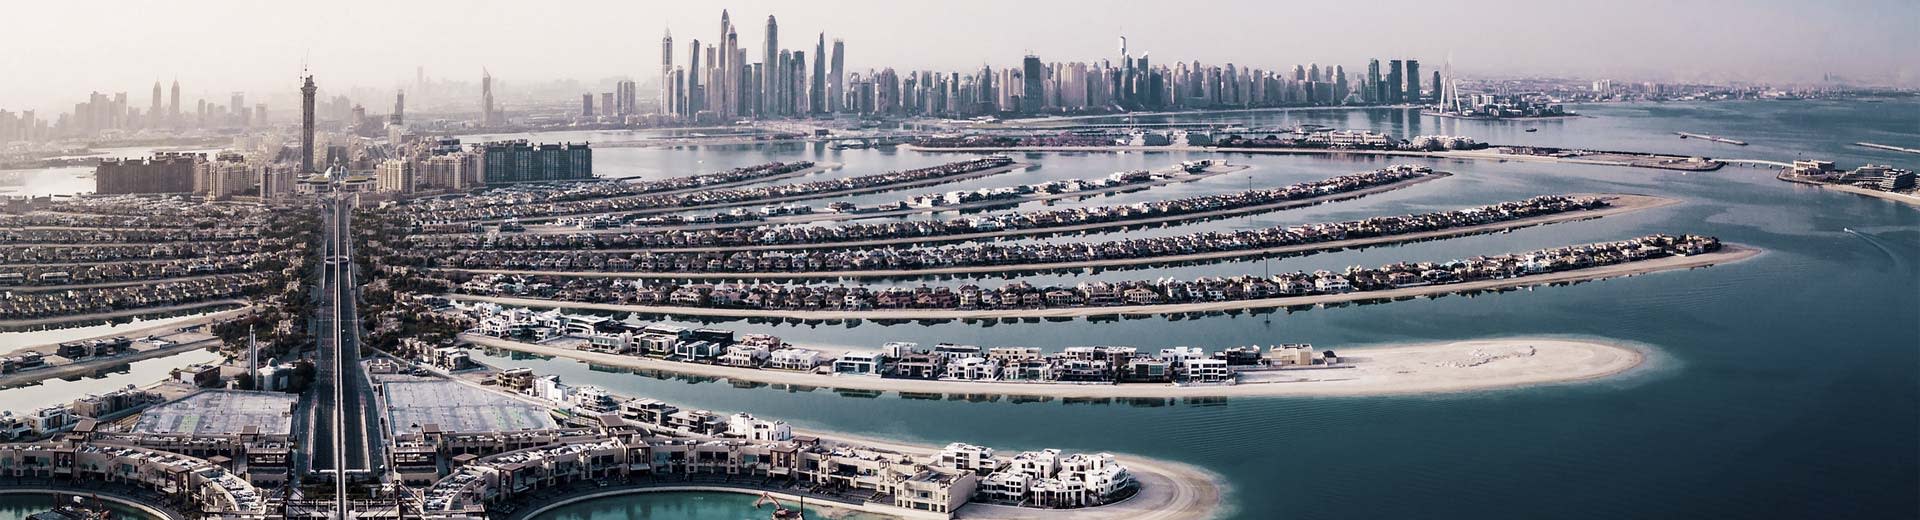 Palm Jumeirah de Dubaï, îles artificielles en forme de frondes de palmier, avec l'horizon du centre-ville en arrière-plan.